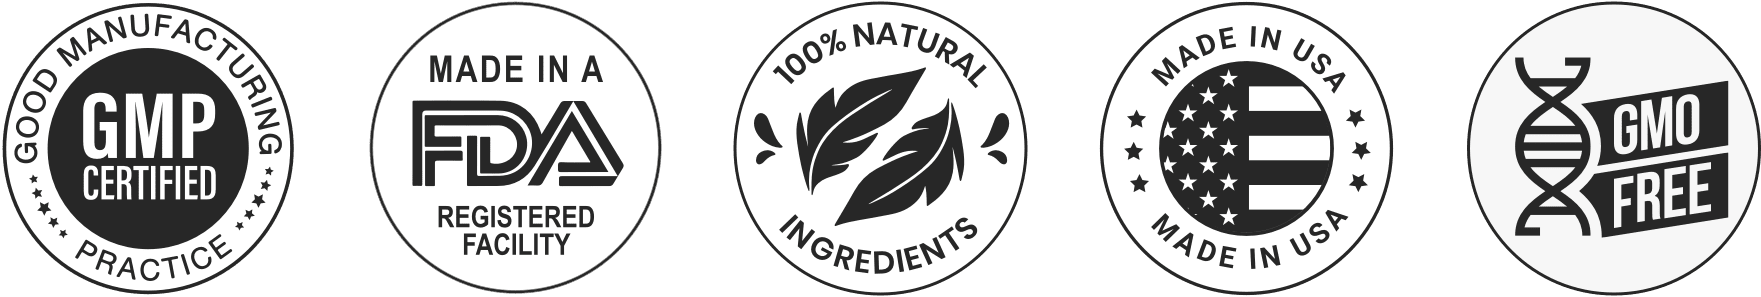 javaburn natural ingredients